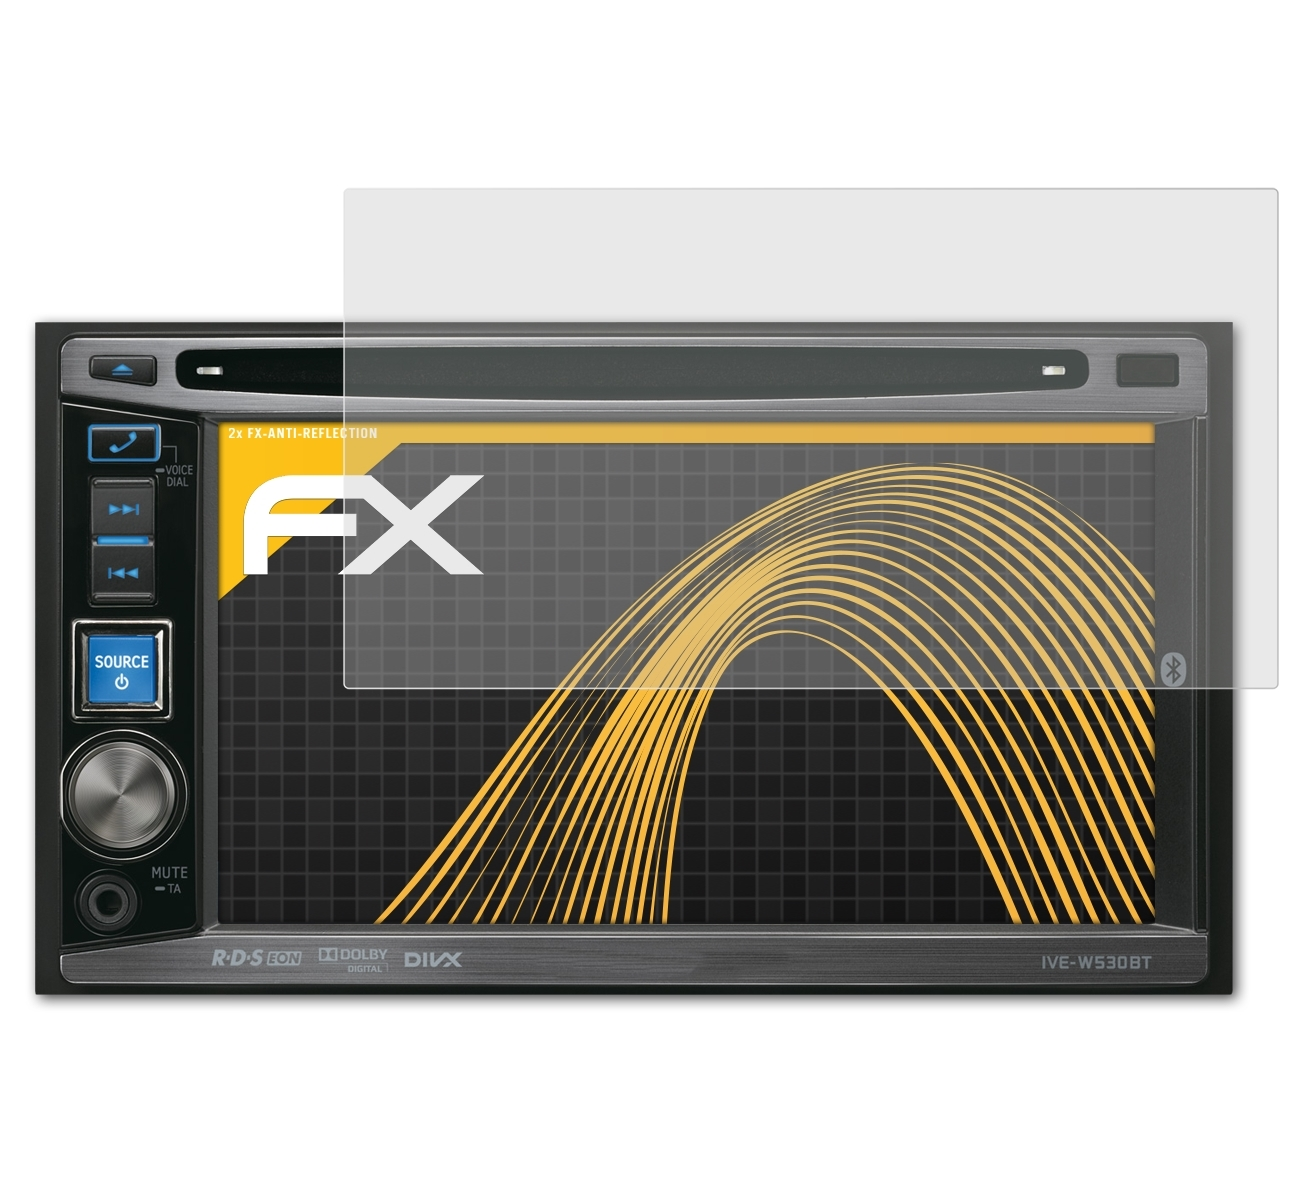 ATFOLIX 2x FX-Antireflex Alpine IVE-W530BT) Displayschutz(für